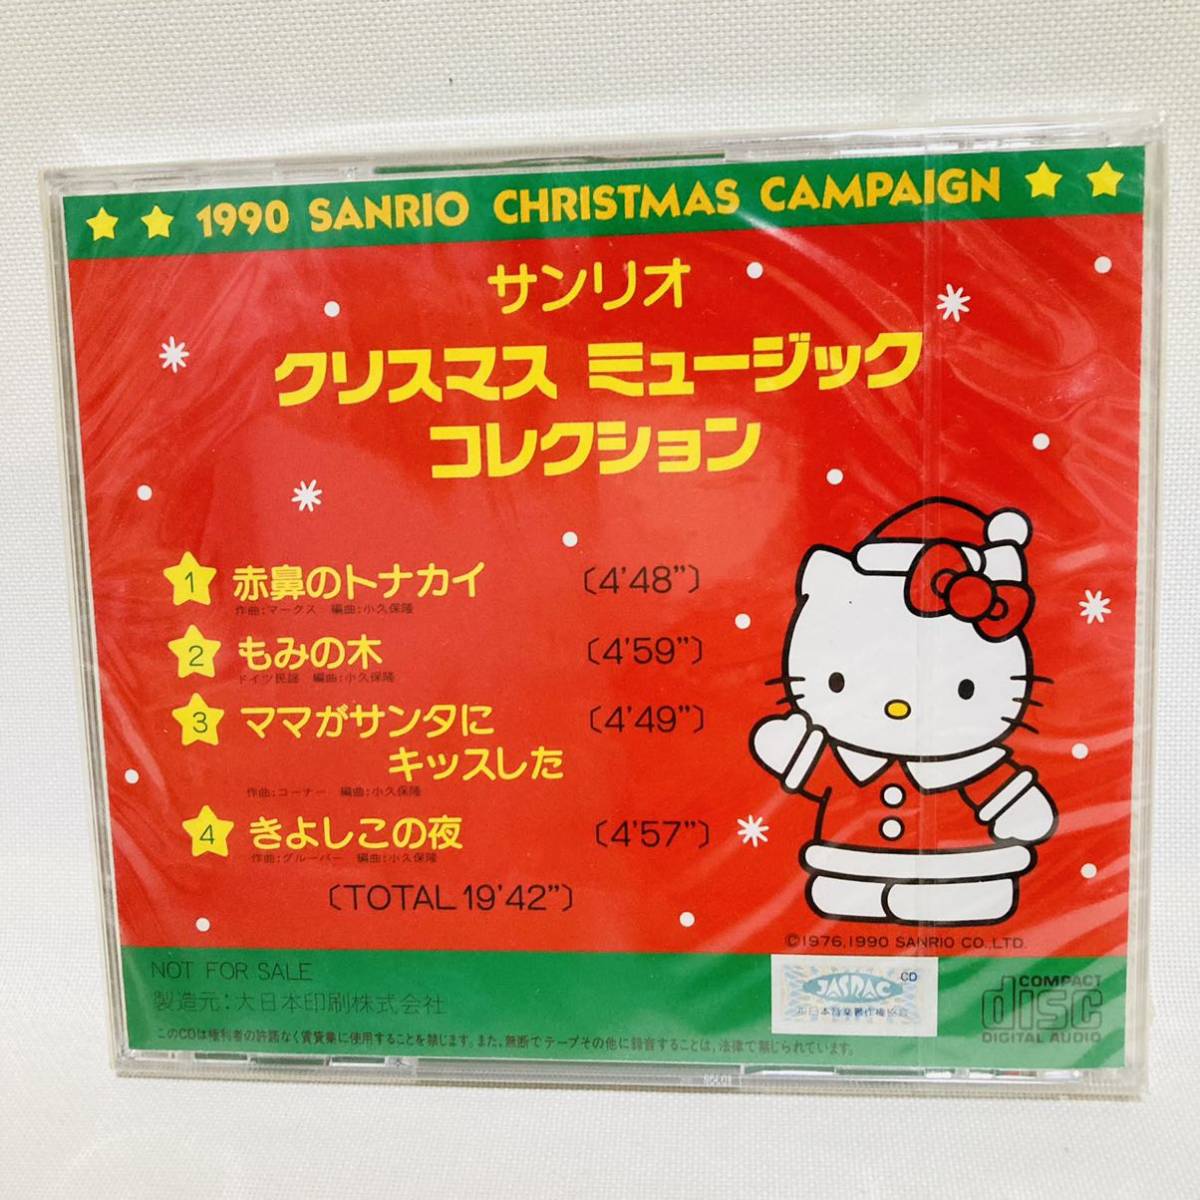 651. новый товар * бесплатная доставка * Sanrio Рождество музыка коллекция Рождество song не продается снят с производства 